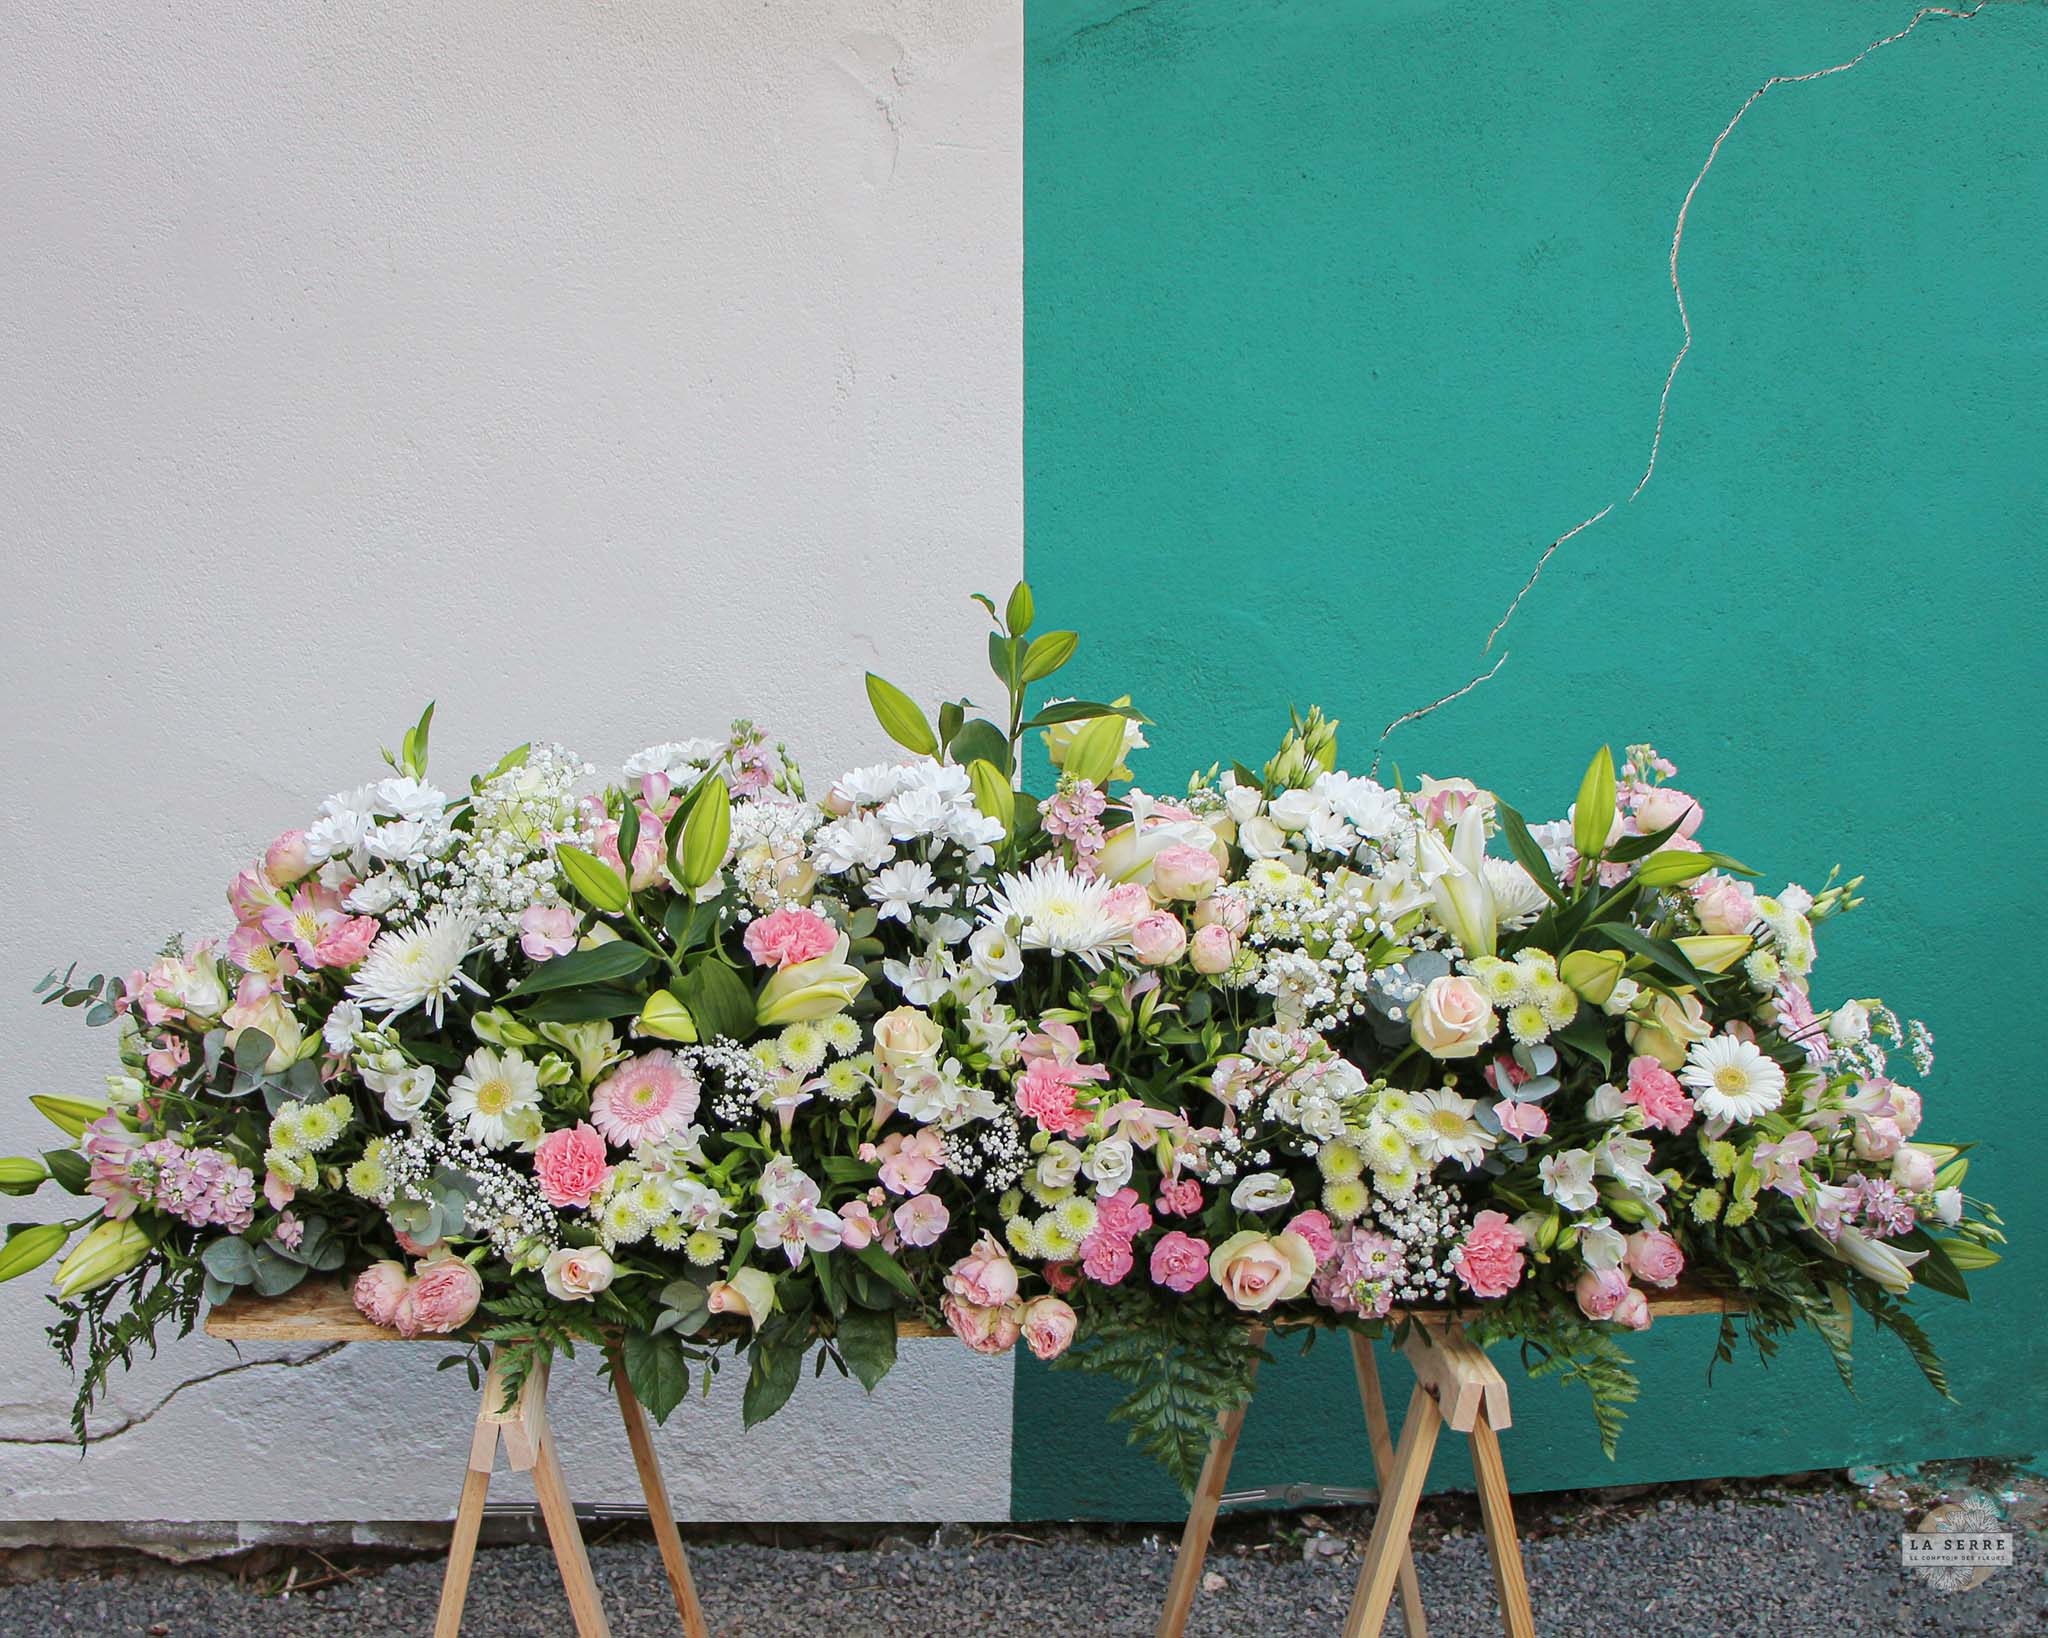 Gerbe de  fleurs pour des obsèques. Livraison rapide à Nantes et sa périphérie. LA SERRE fleuriste Nantes